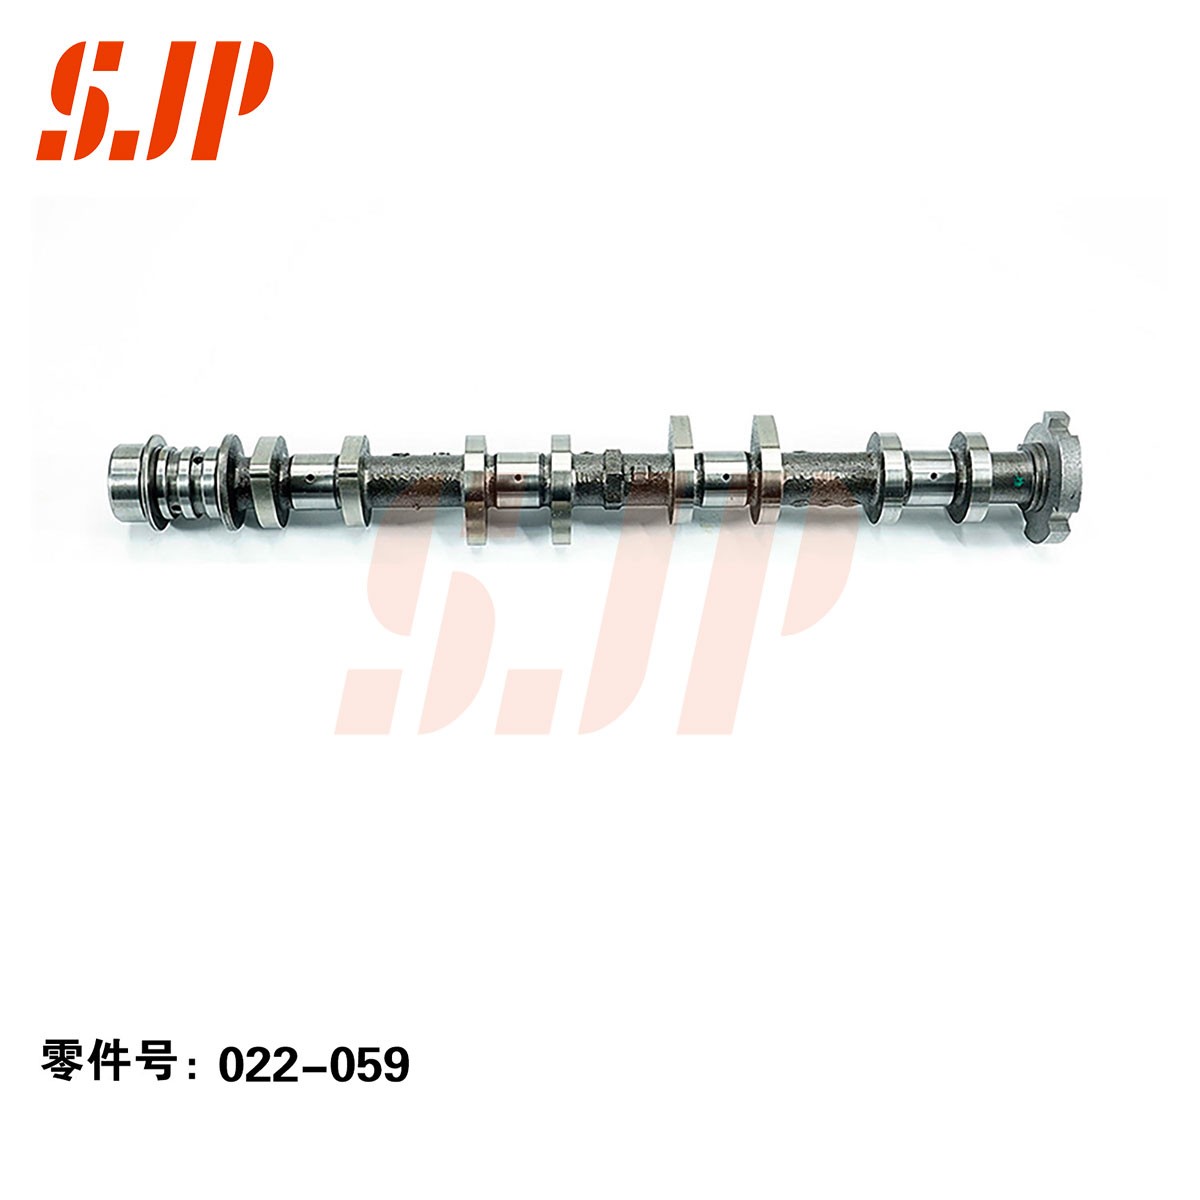 SJ-022-059 Camshaft For BAIC MOTOR 515DL/515KR/DAM16KR